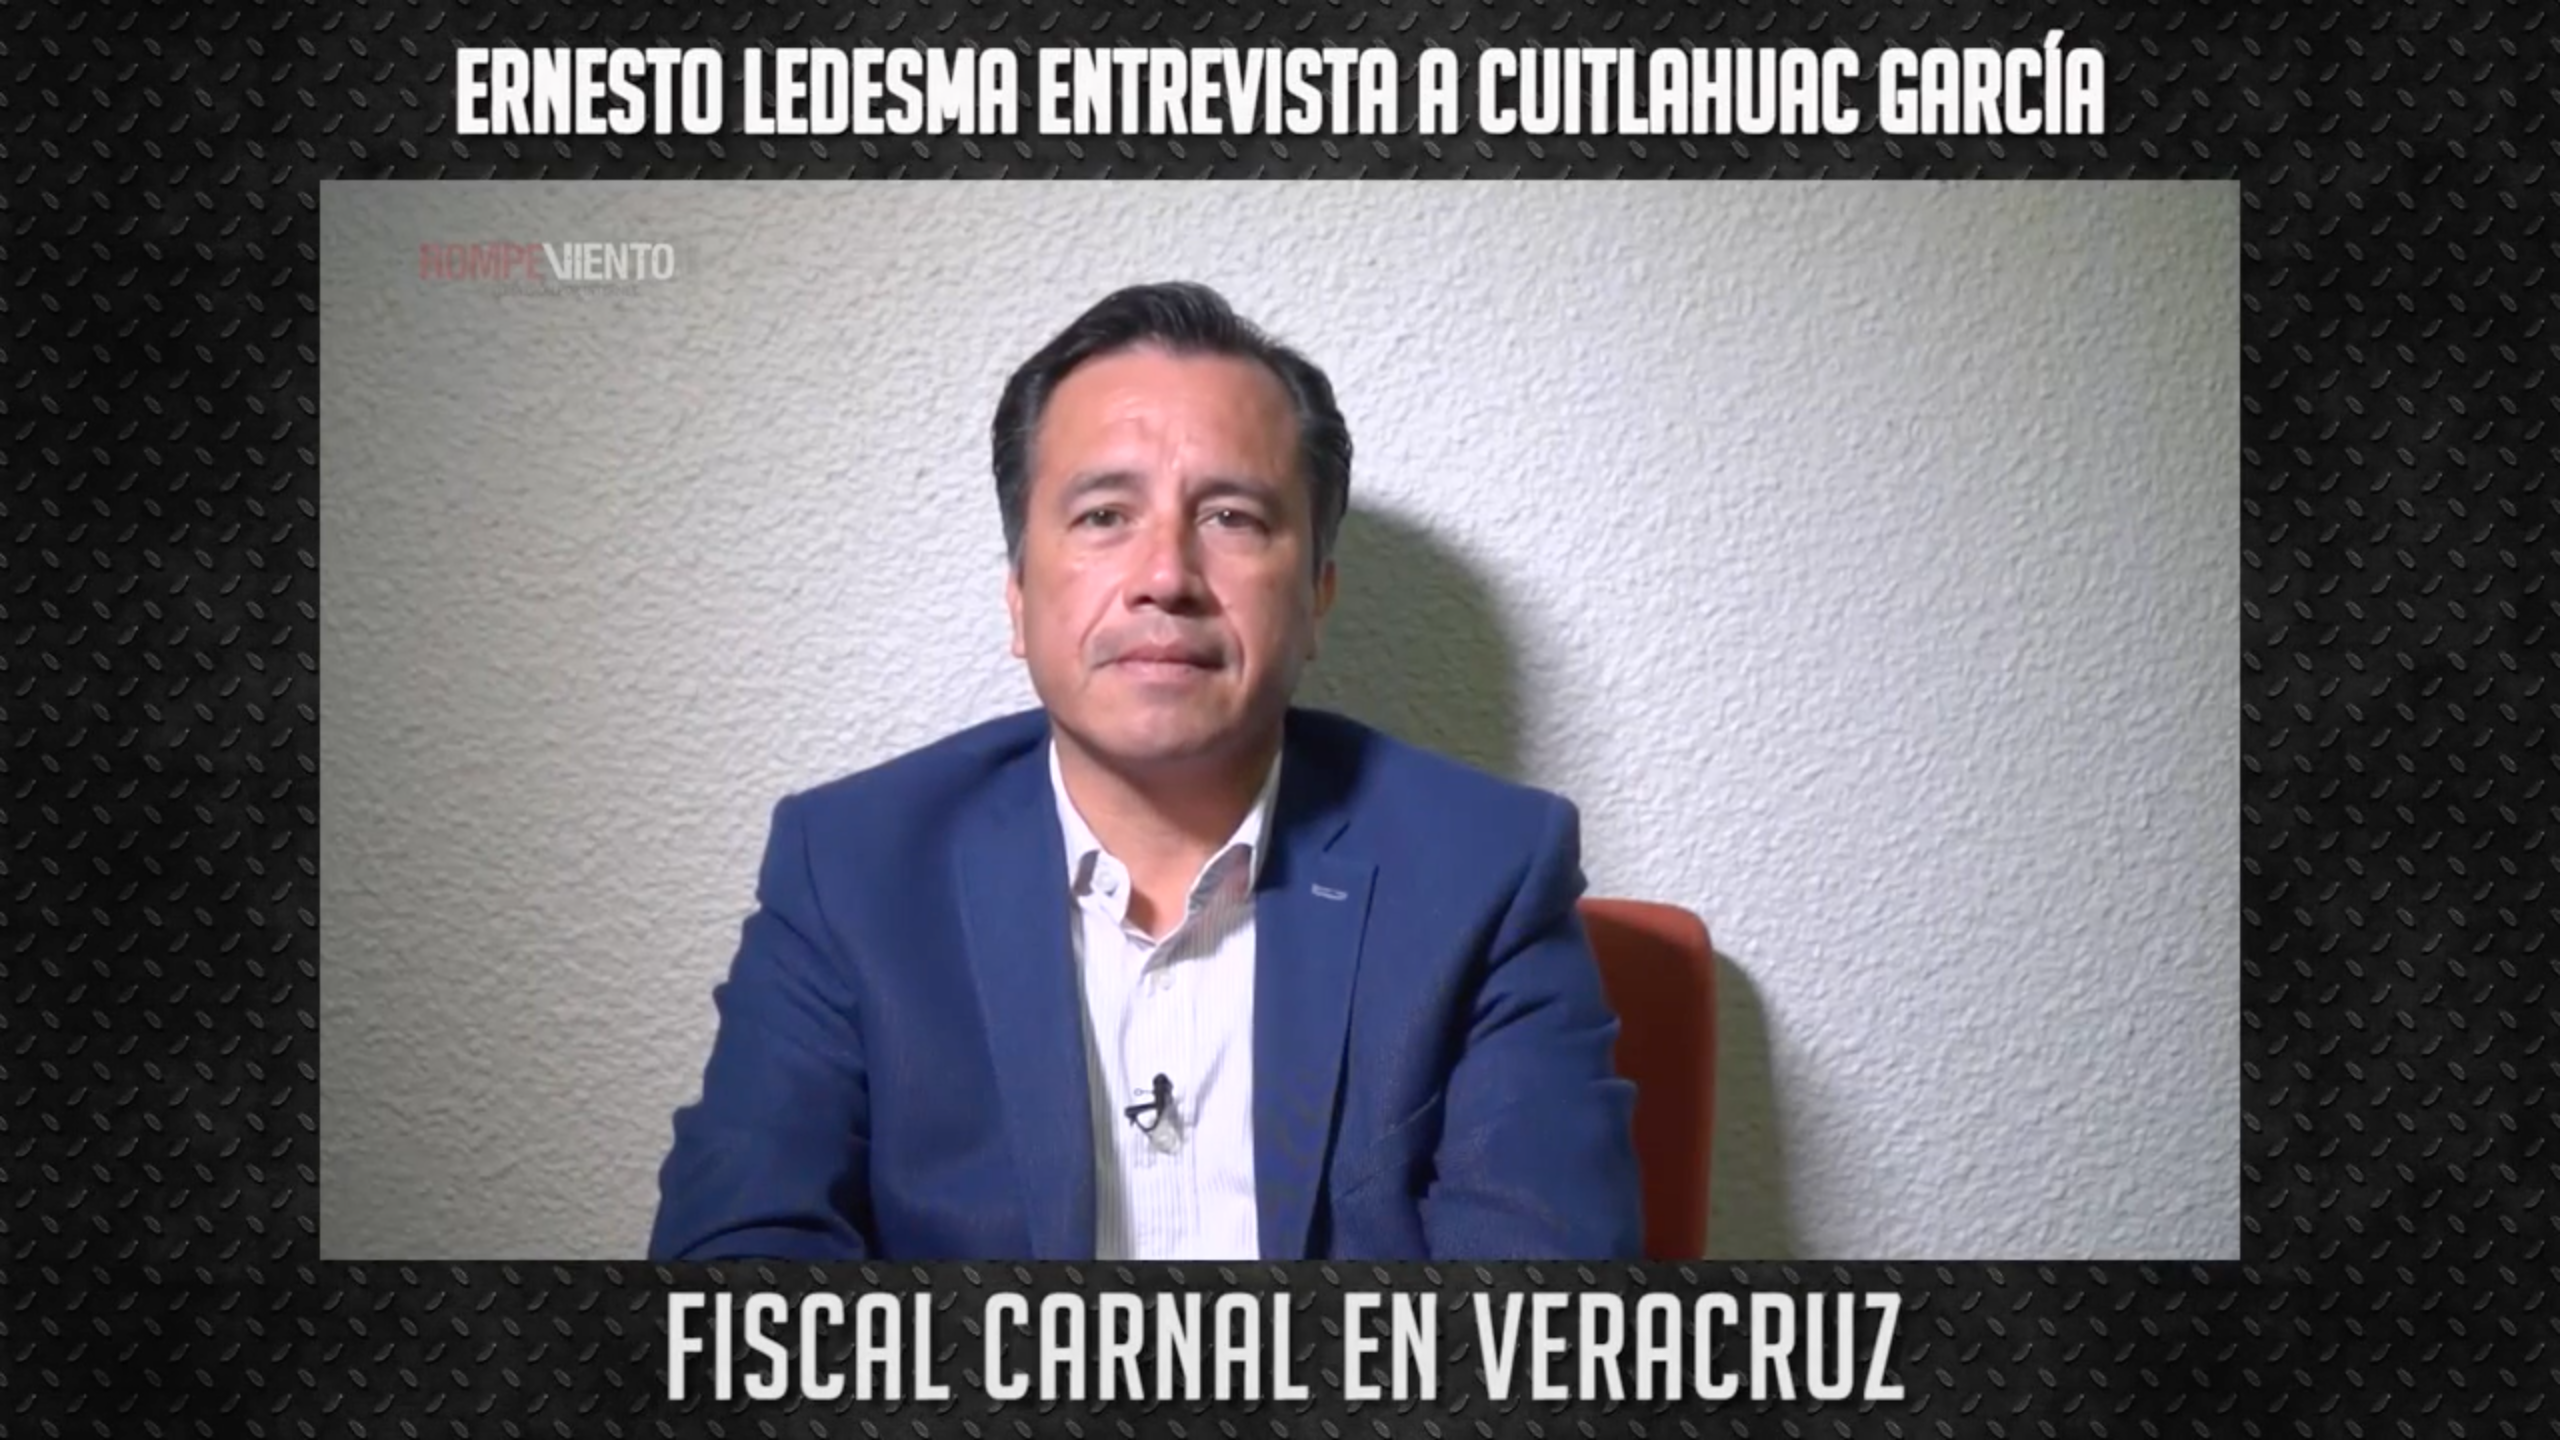 Perspectivas -  Cuitláhuac García -  El fiscal carnal en Veracruz